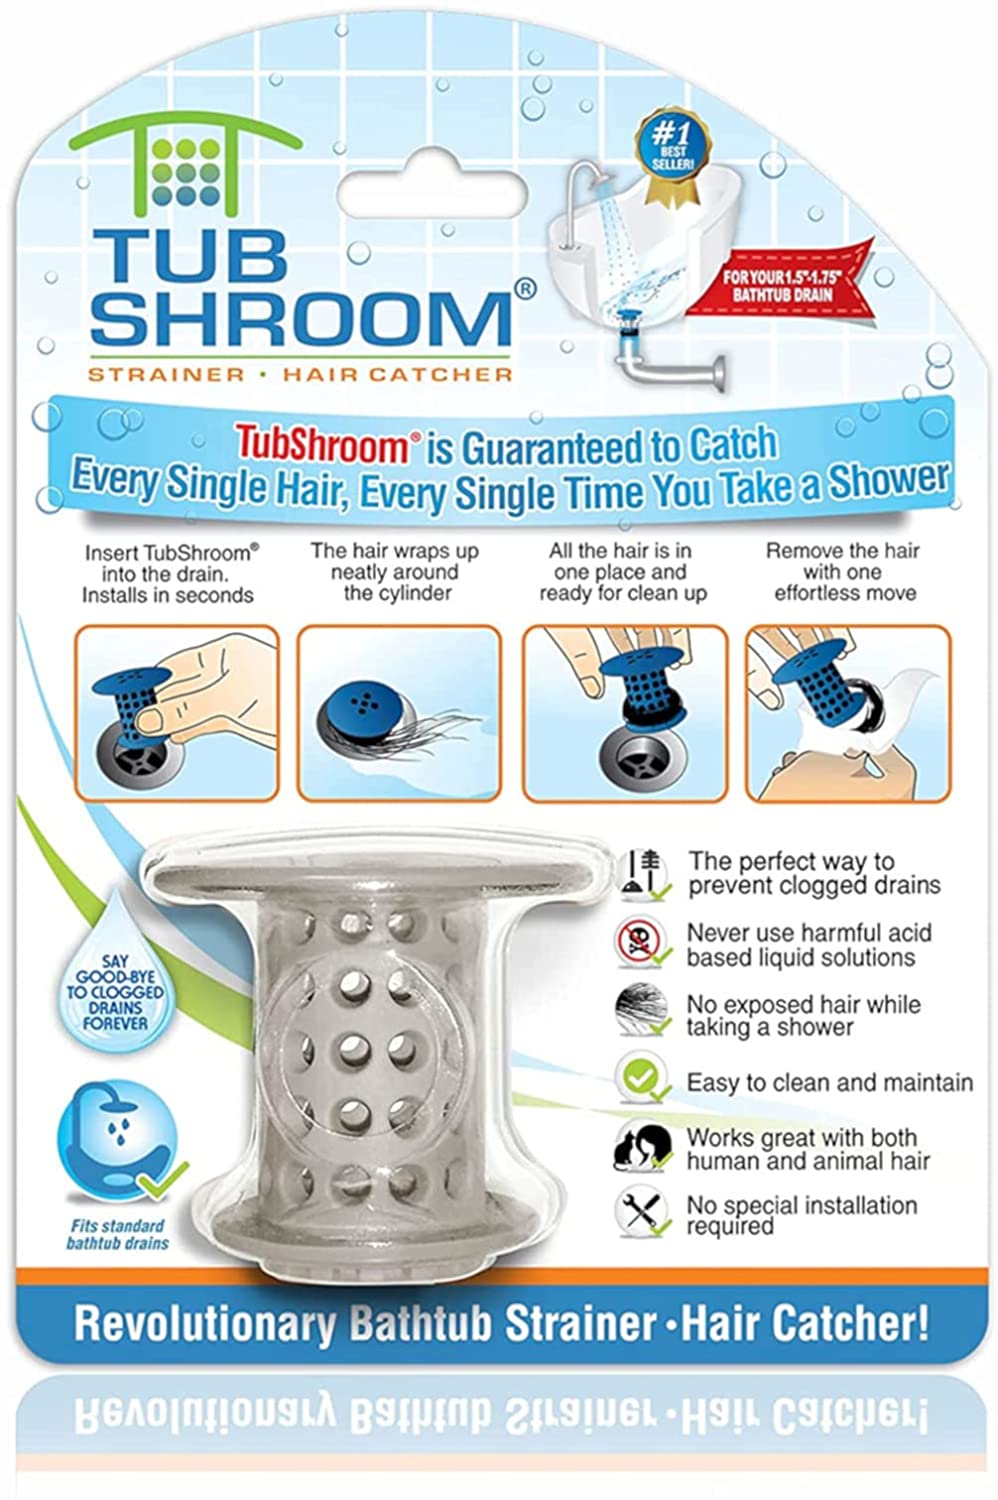 TubShroom Ultra plus StopShroom Plug Bundle 